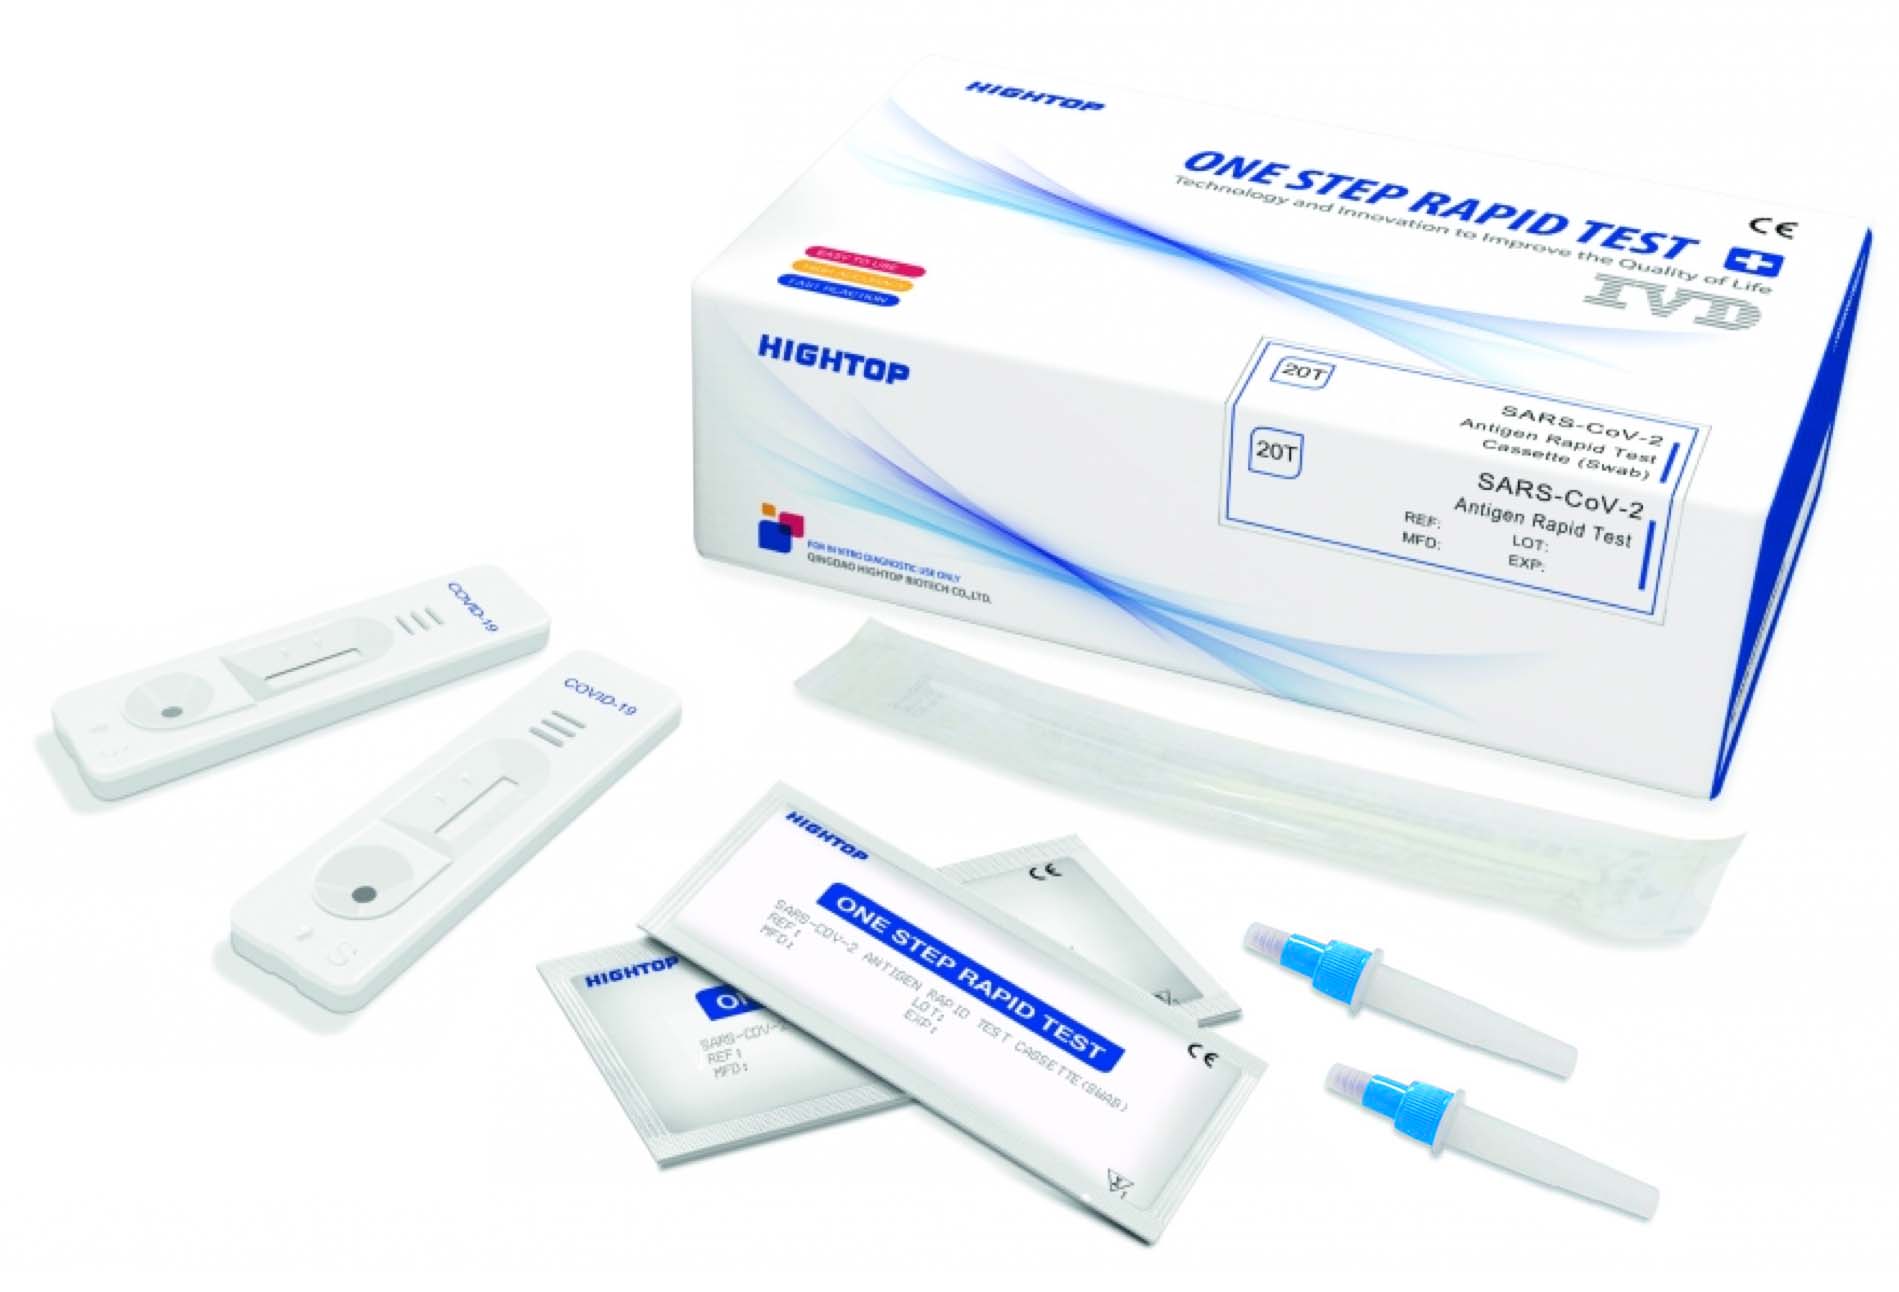  Profischnelltest: Hightop Antigen One Step Rapid Test Sars CoV 2